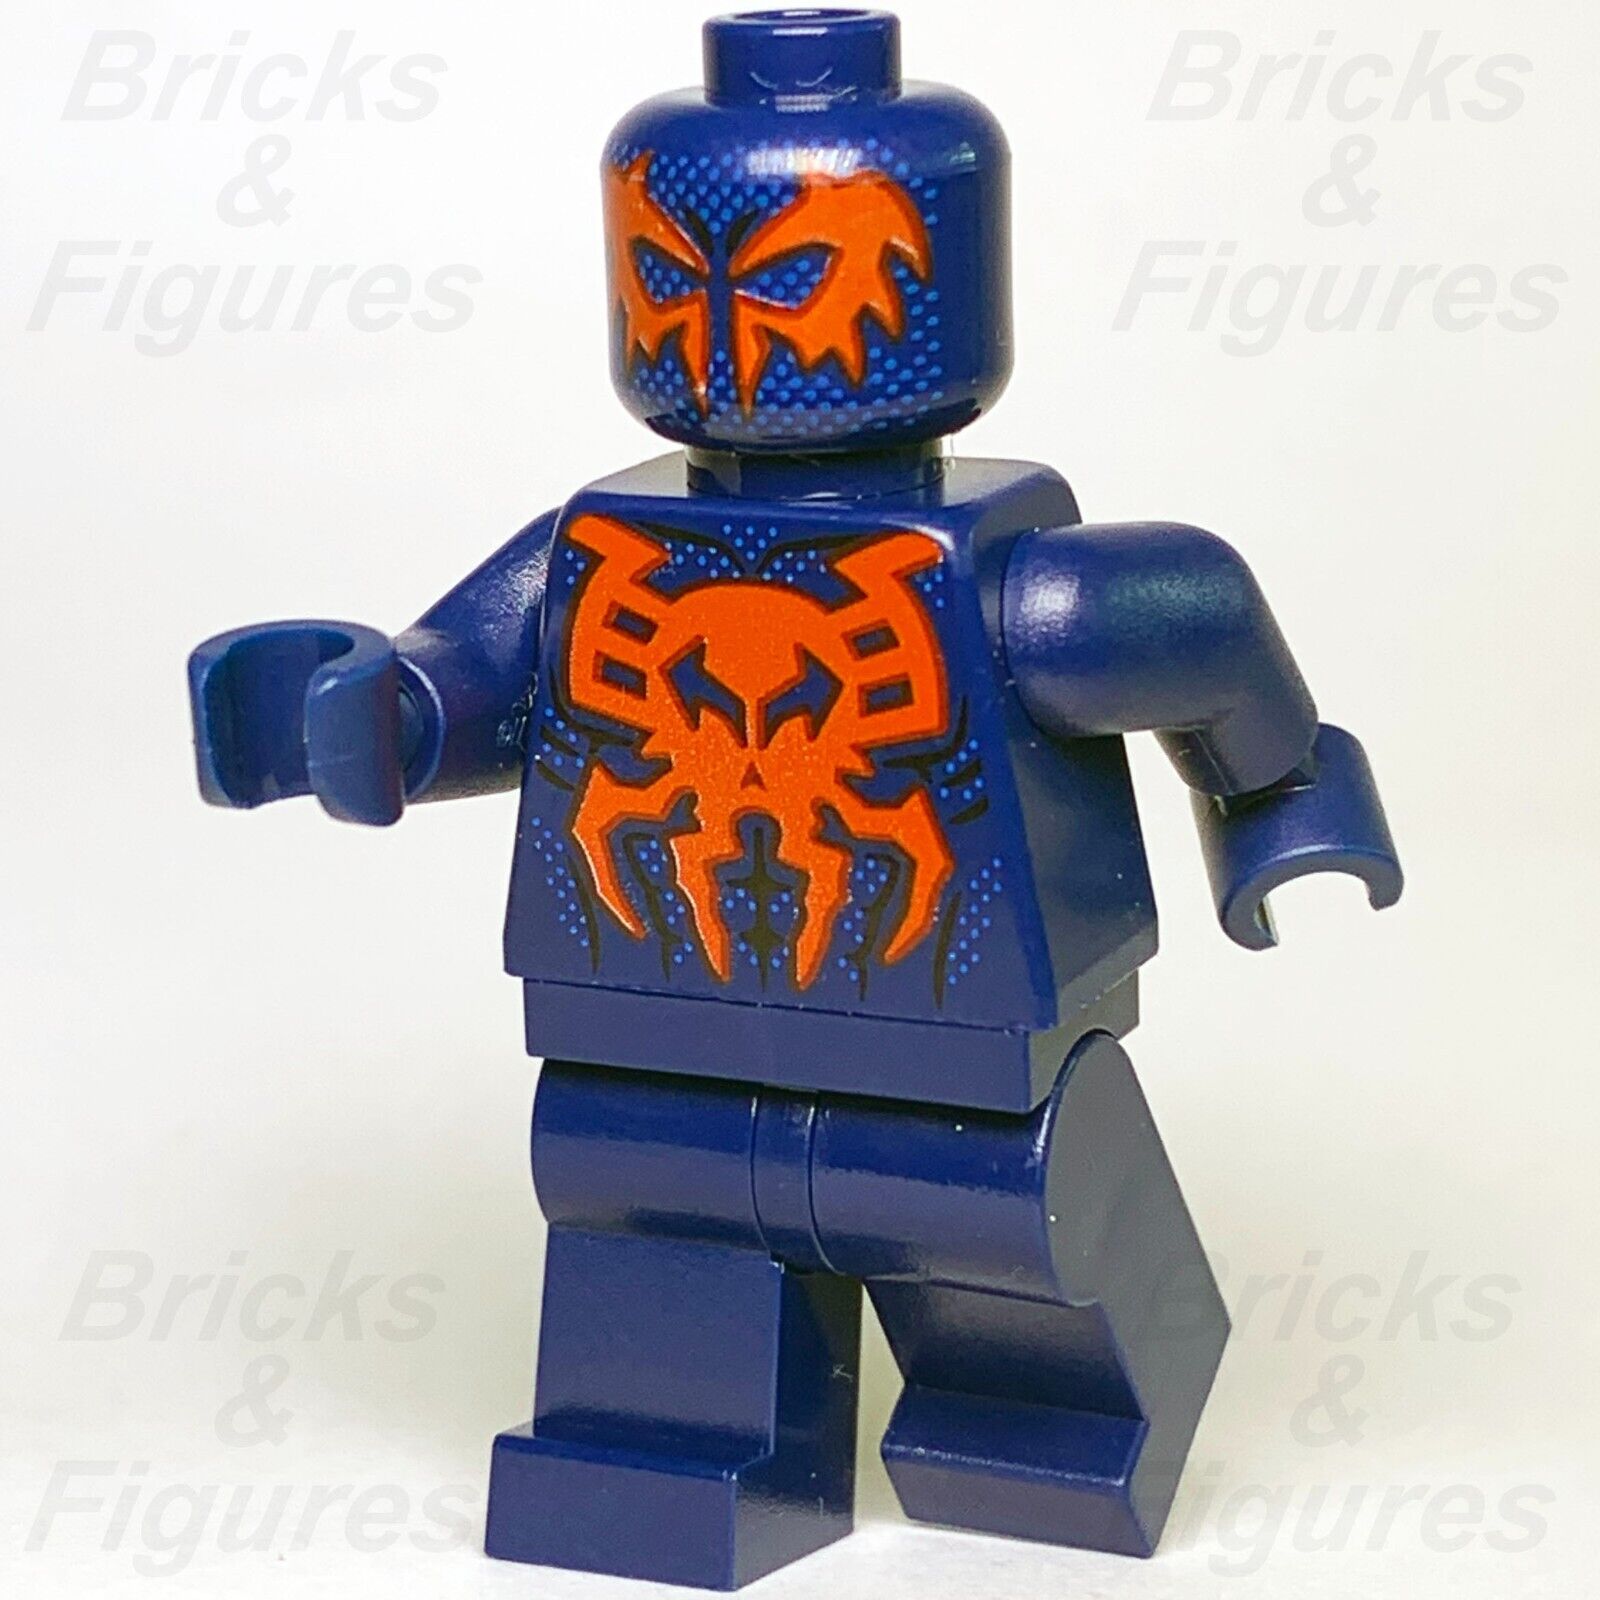 レゴ スーパー ヒーローズ スパイダーマン 2099 ミニフィギュア ミゲル オハラ マーベル 76114 sh539